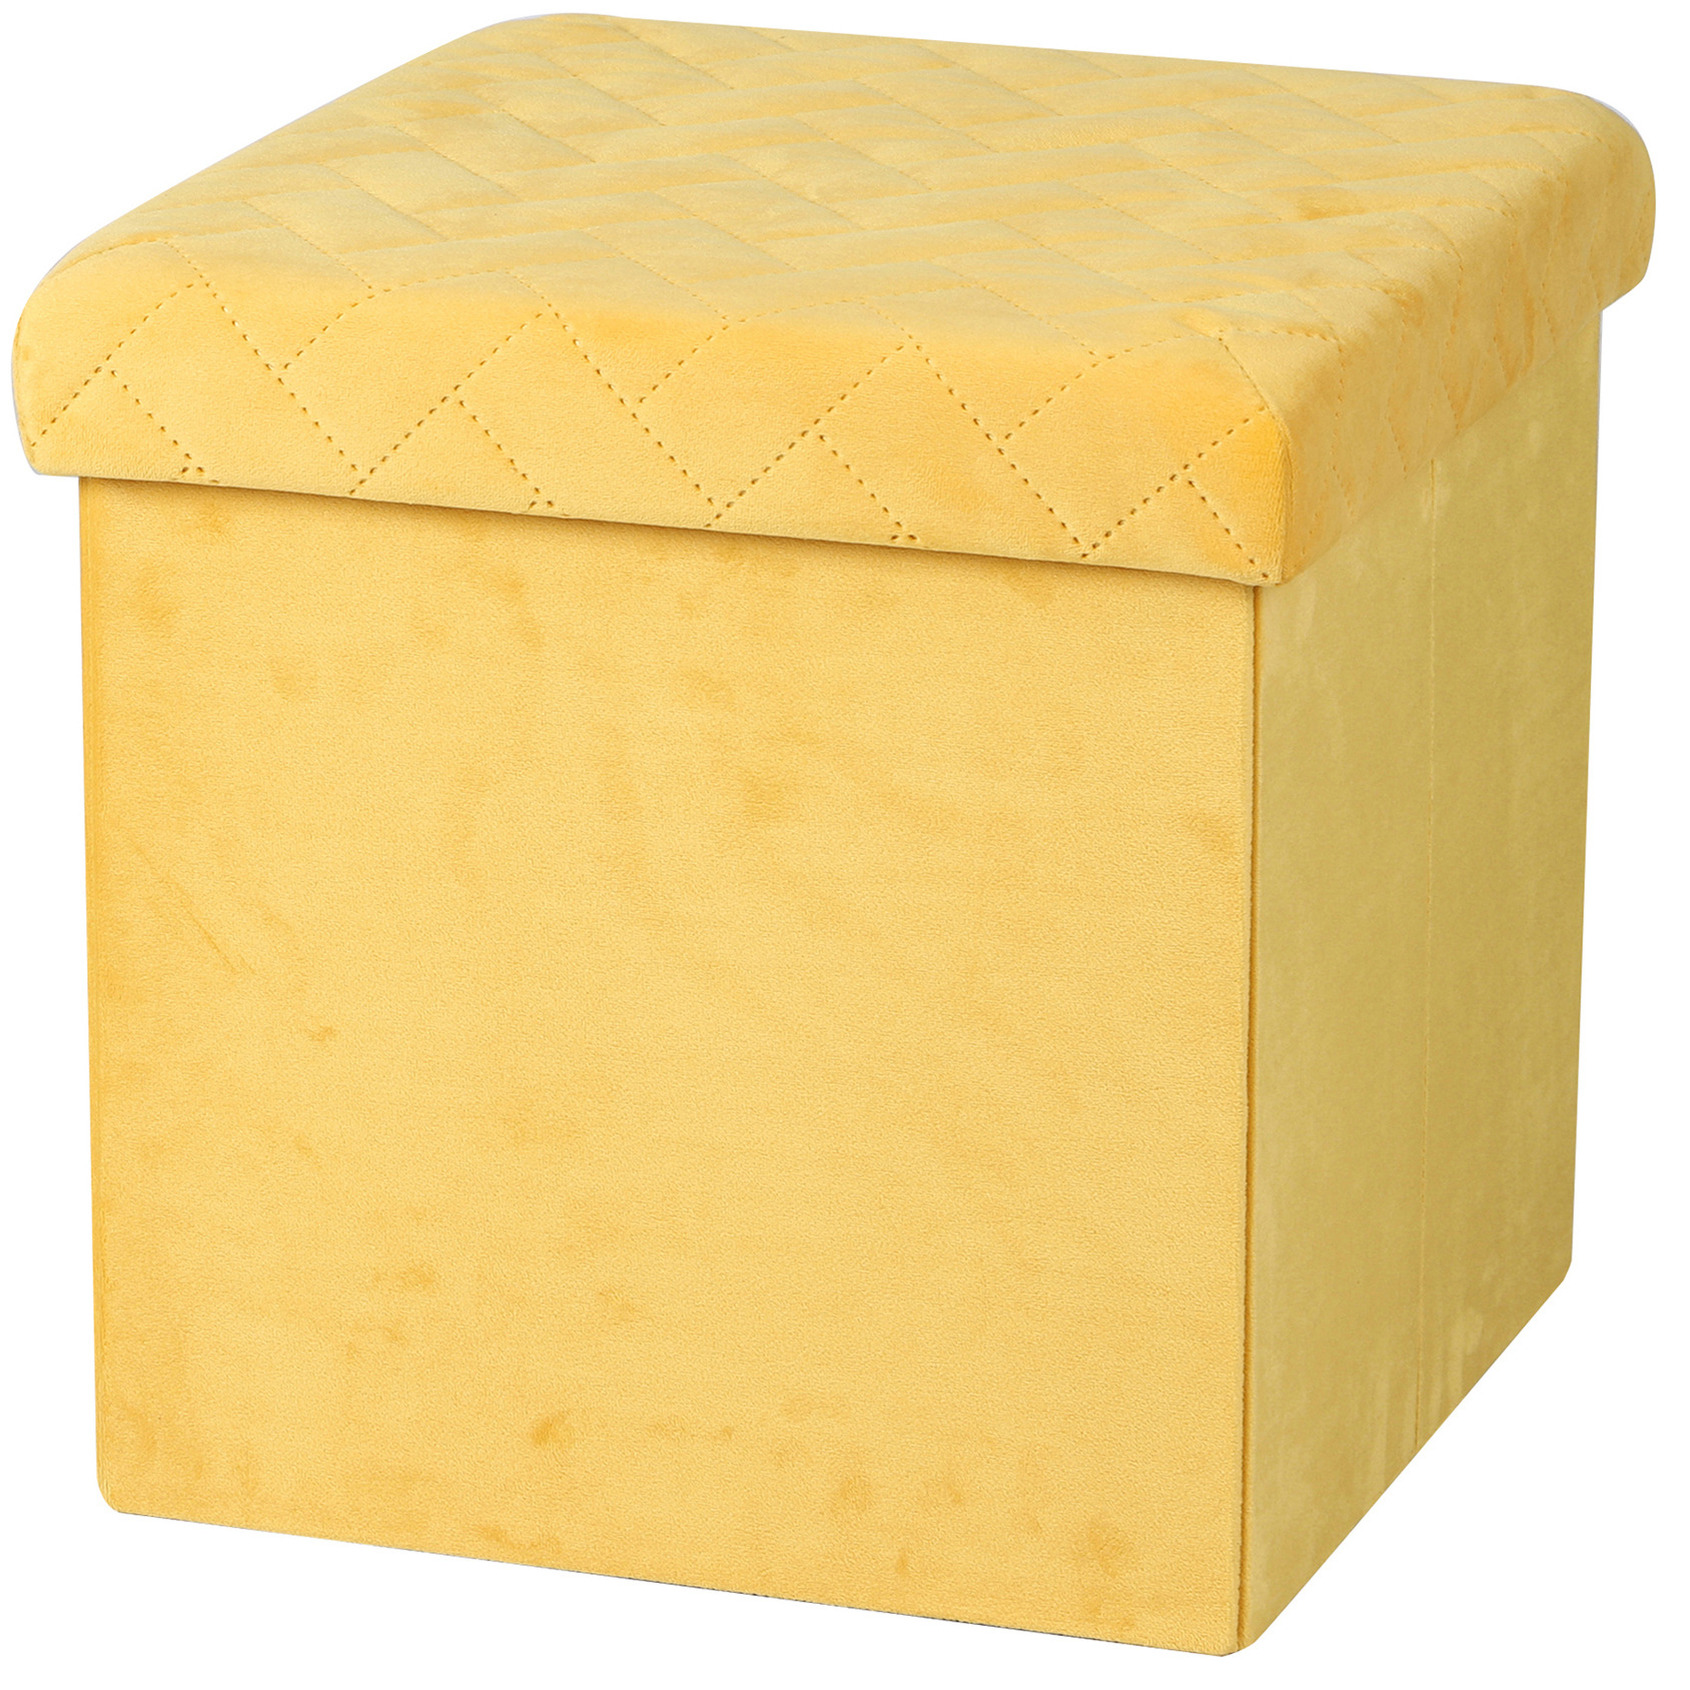 Poef-hocker opbergbox zit krukje velvet geel polyester-mdf 38 x 38 cm opvouwbaar